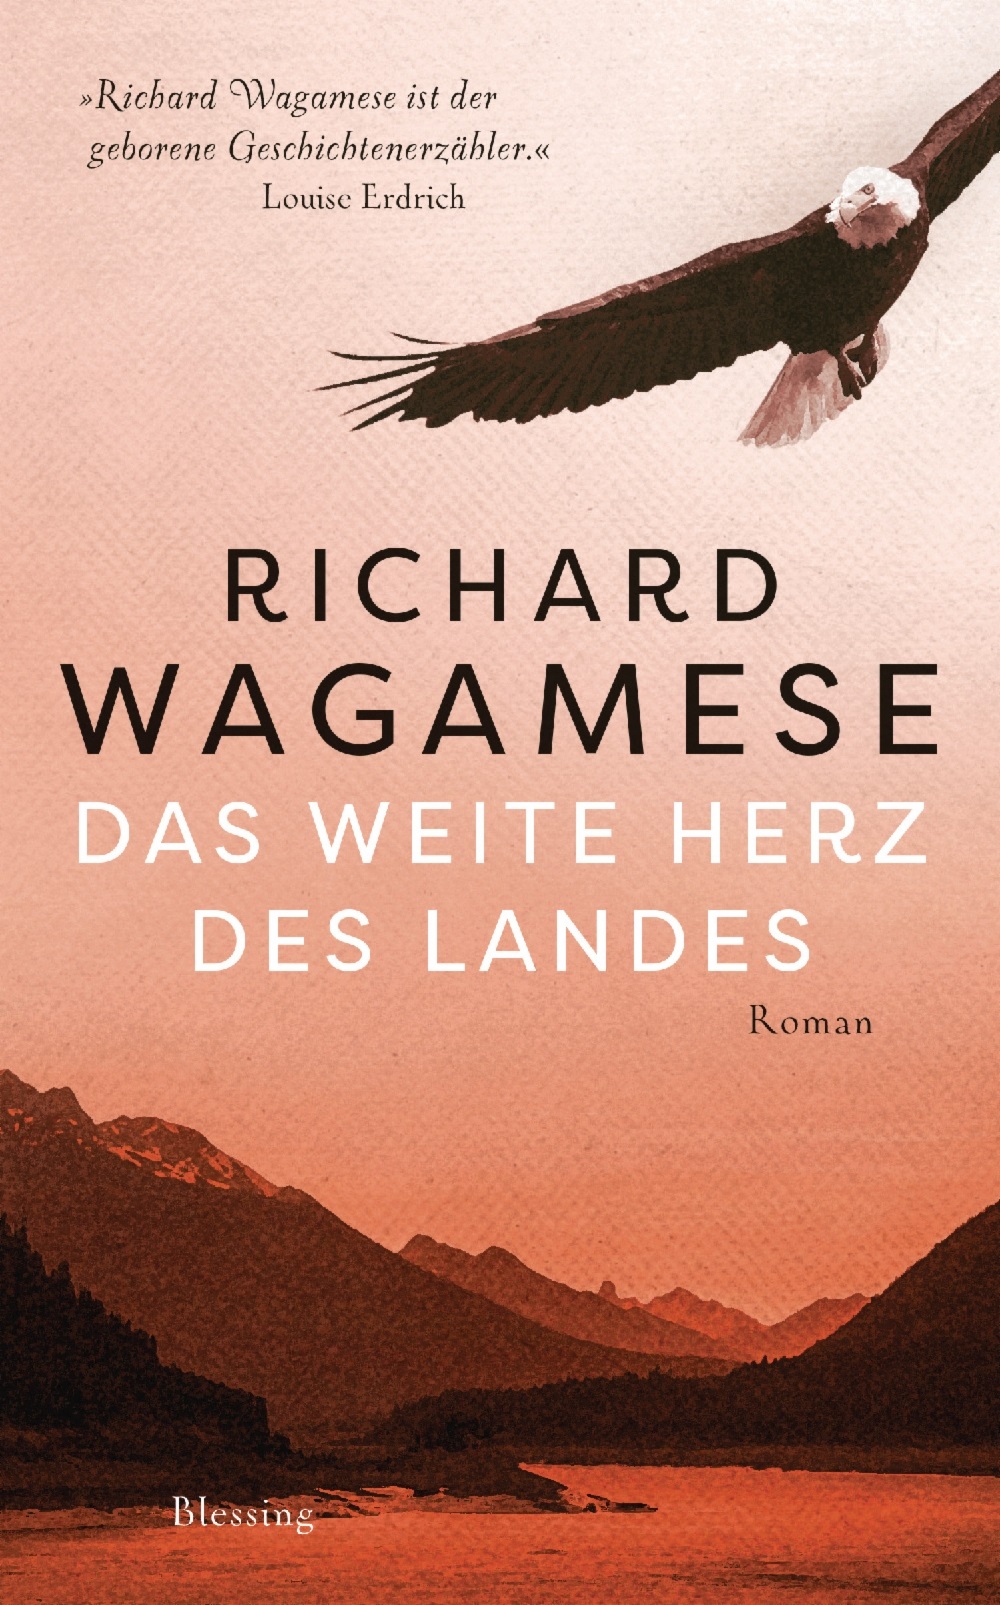 Richard Wagamese – Das weite Herz des Landes